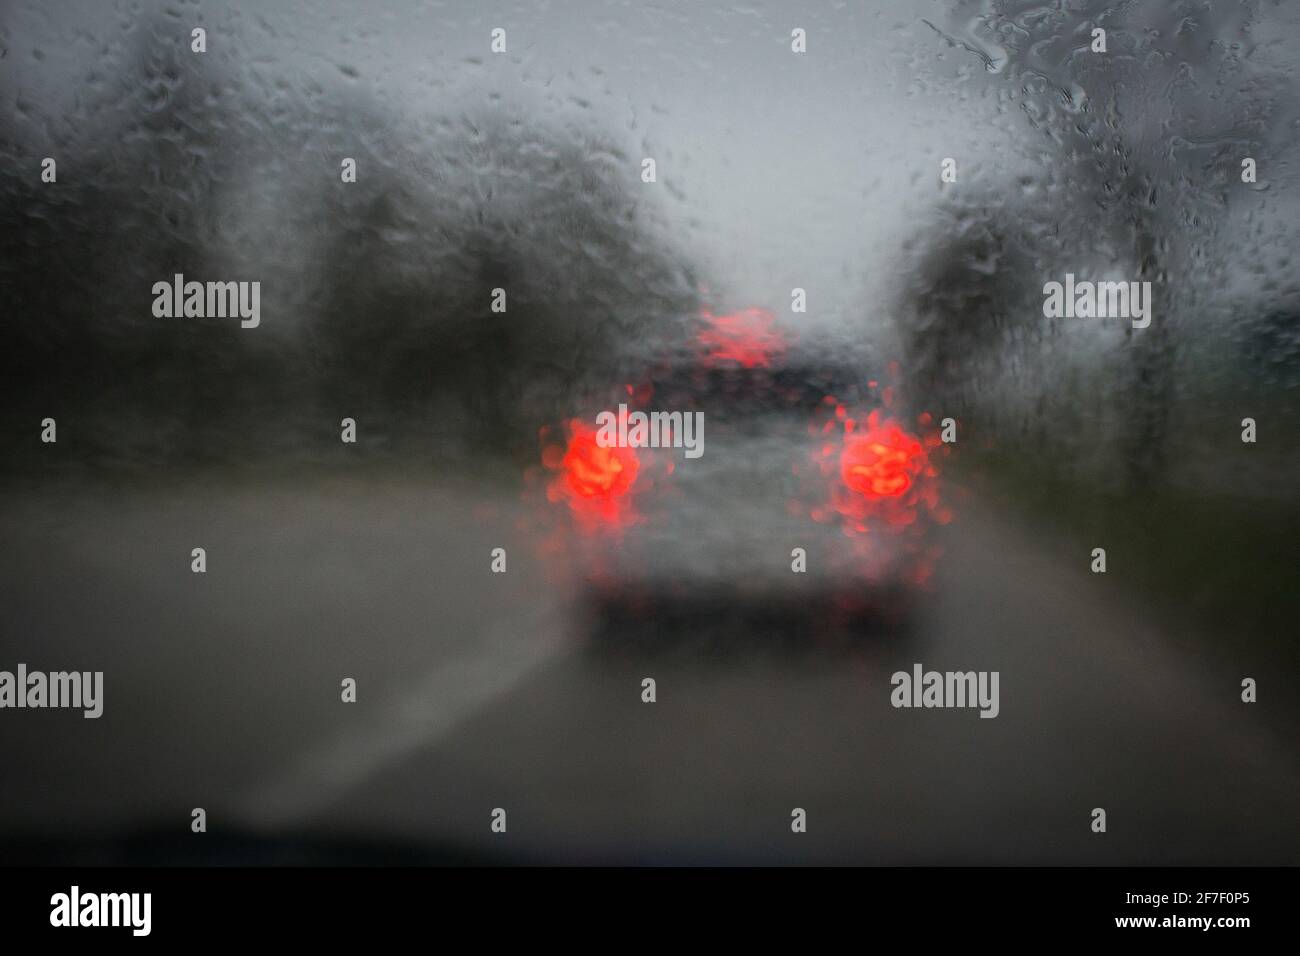 La pioggia cade sul parabrezza di un'auto impedendo una buona visibilità della frenata di un'auto davanti. Concetto di tempo di reazione ritardato dovuto al parabrezza sporco e piovoso. Foto Stock